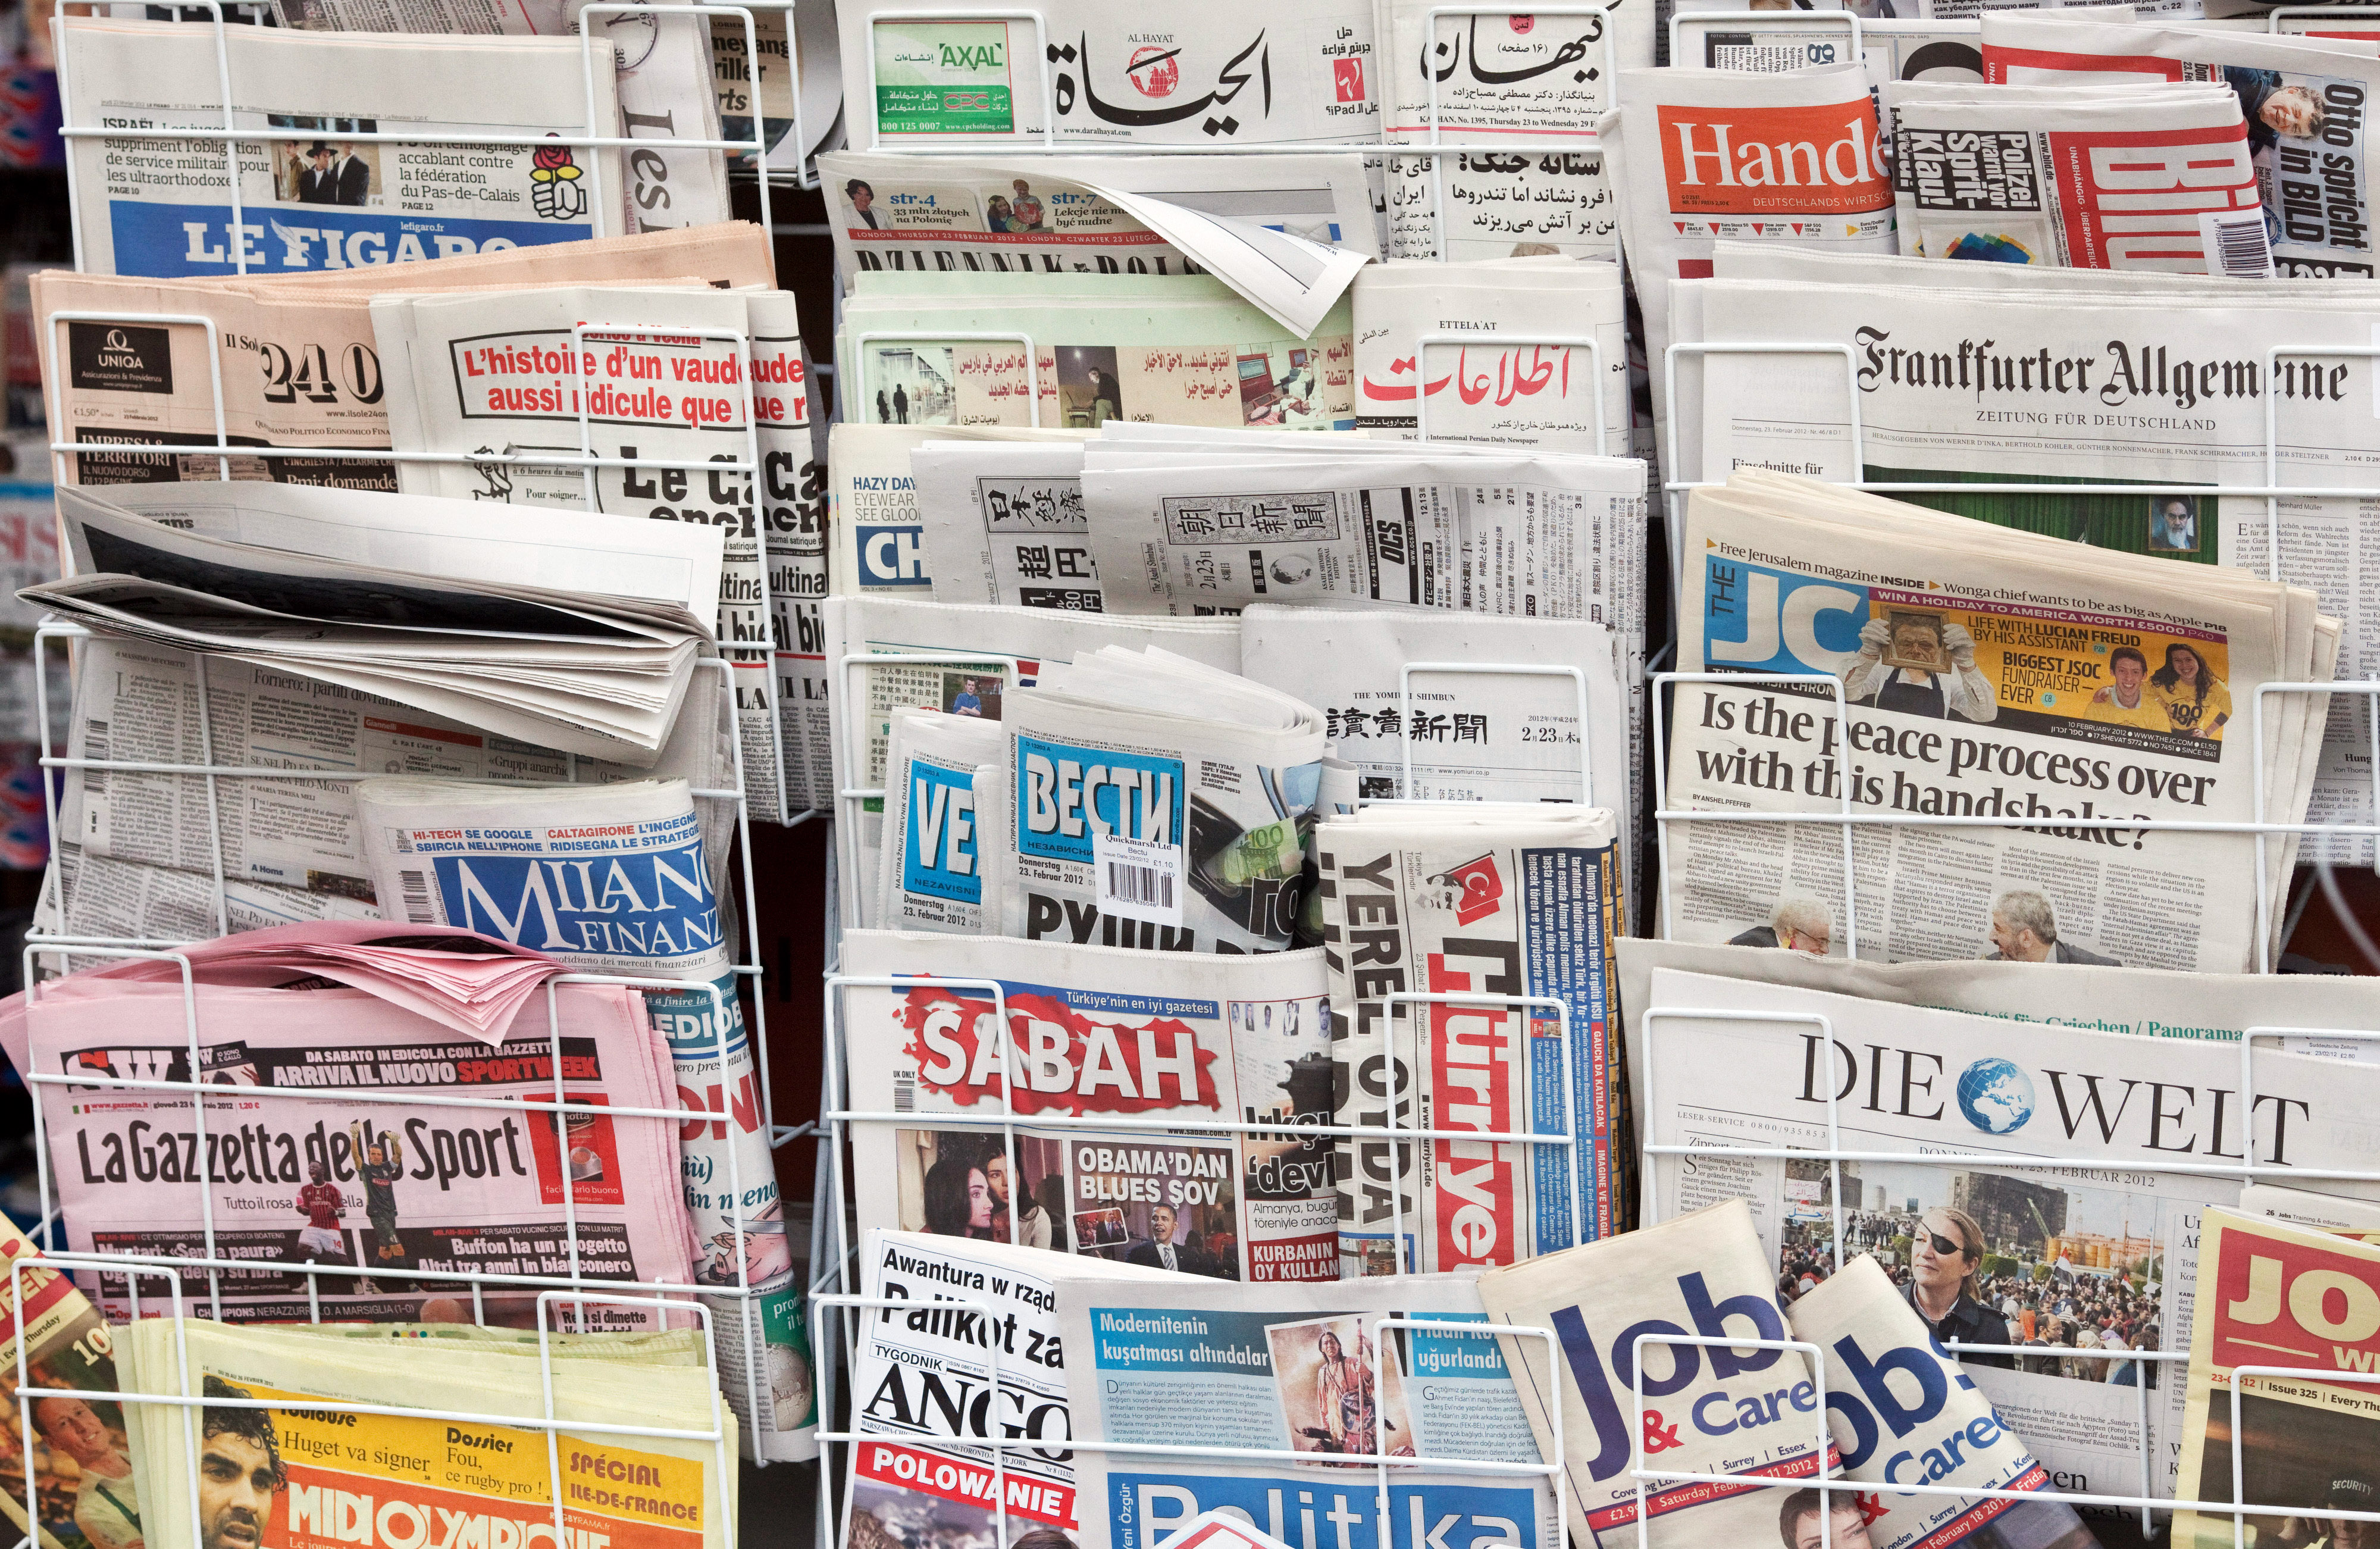  International newspaper range at a newsstand